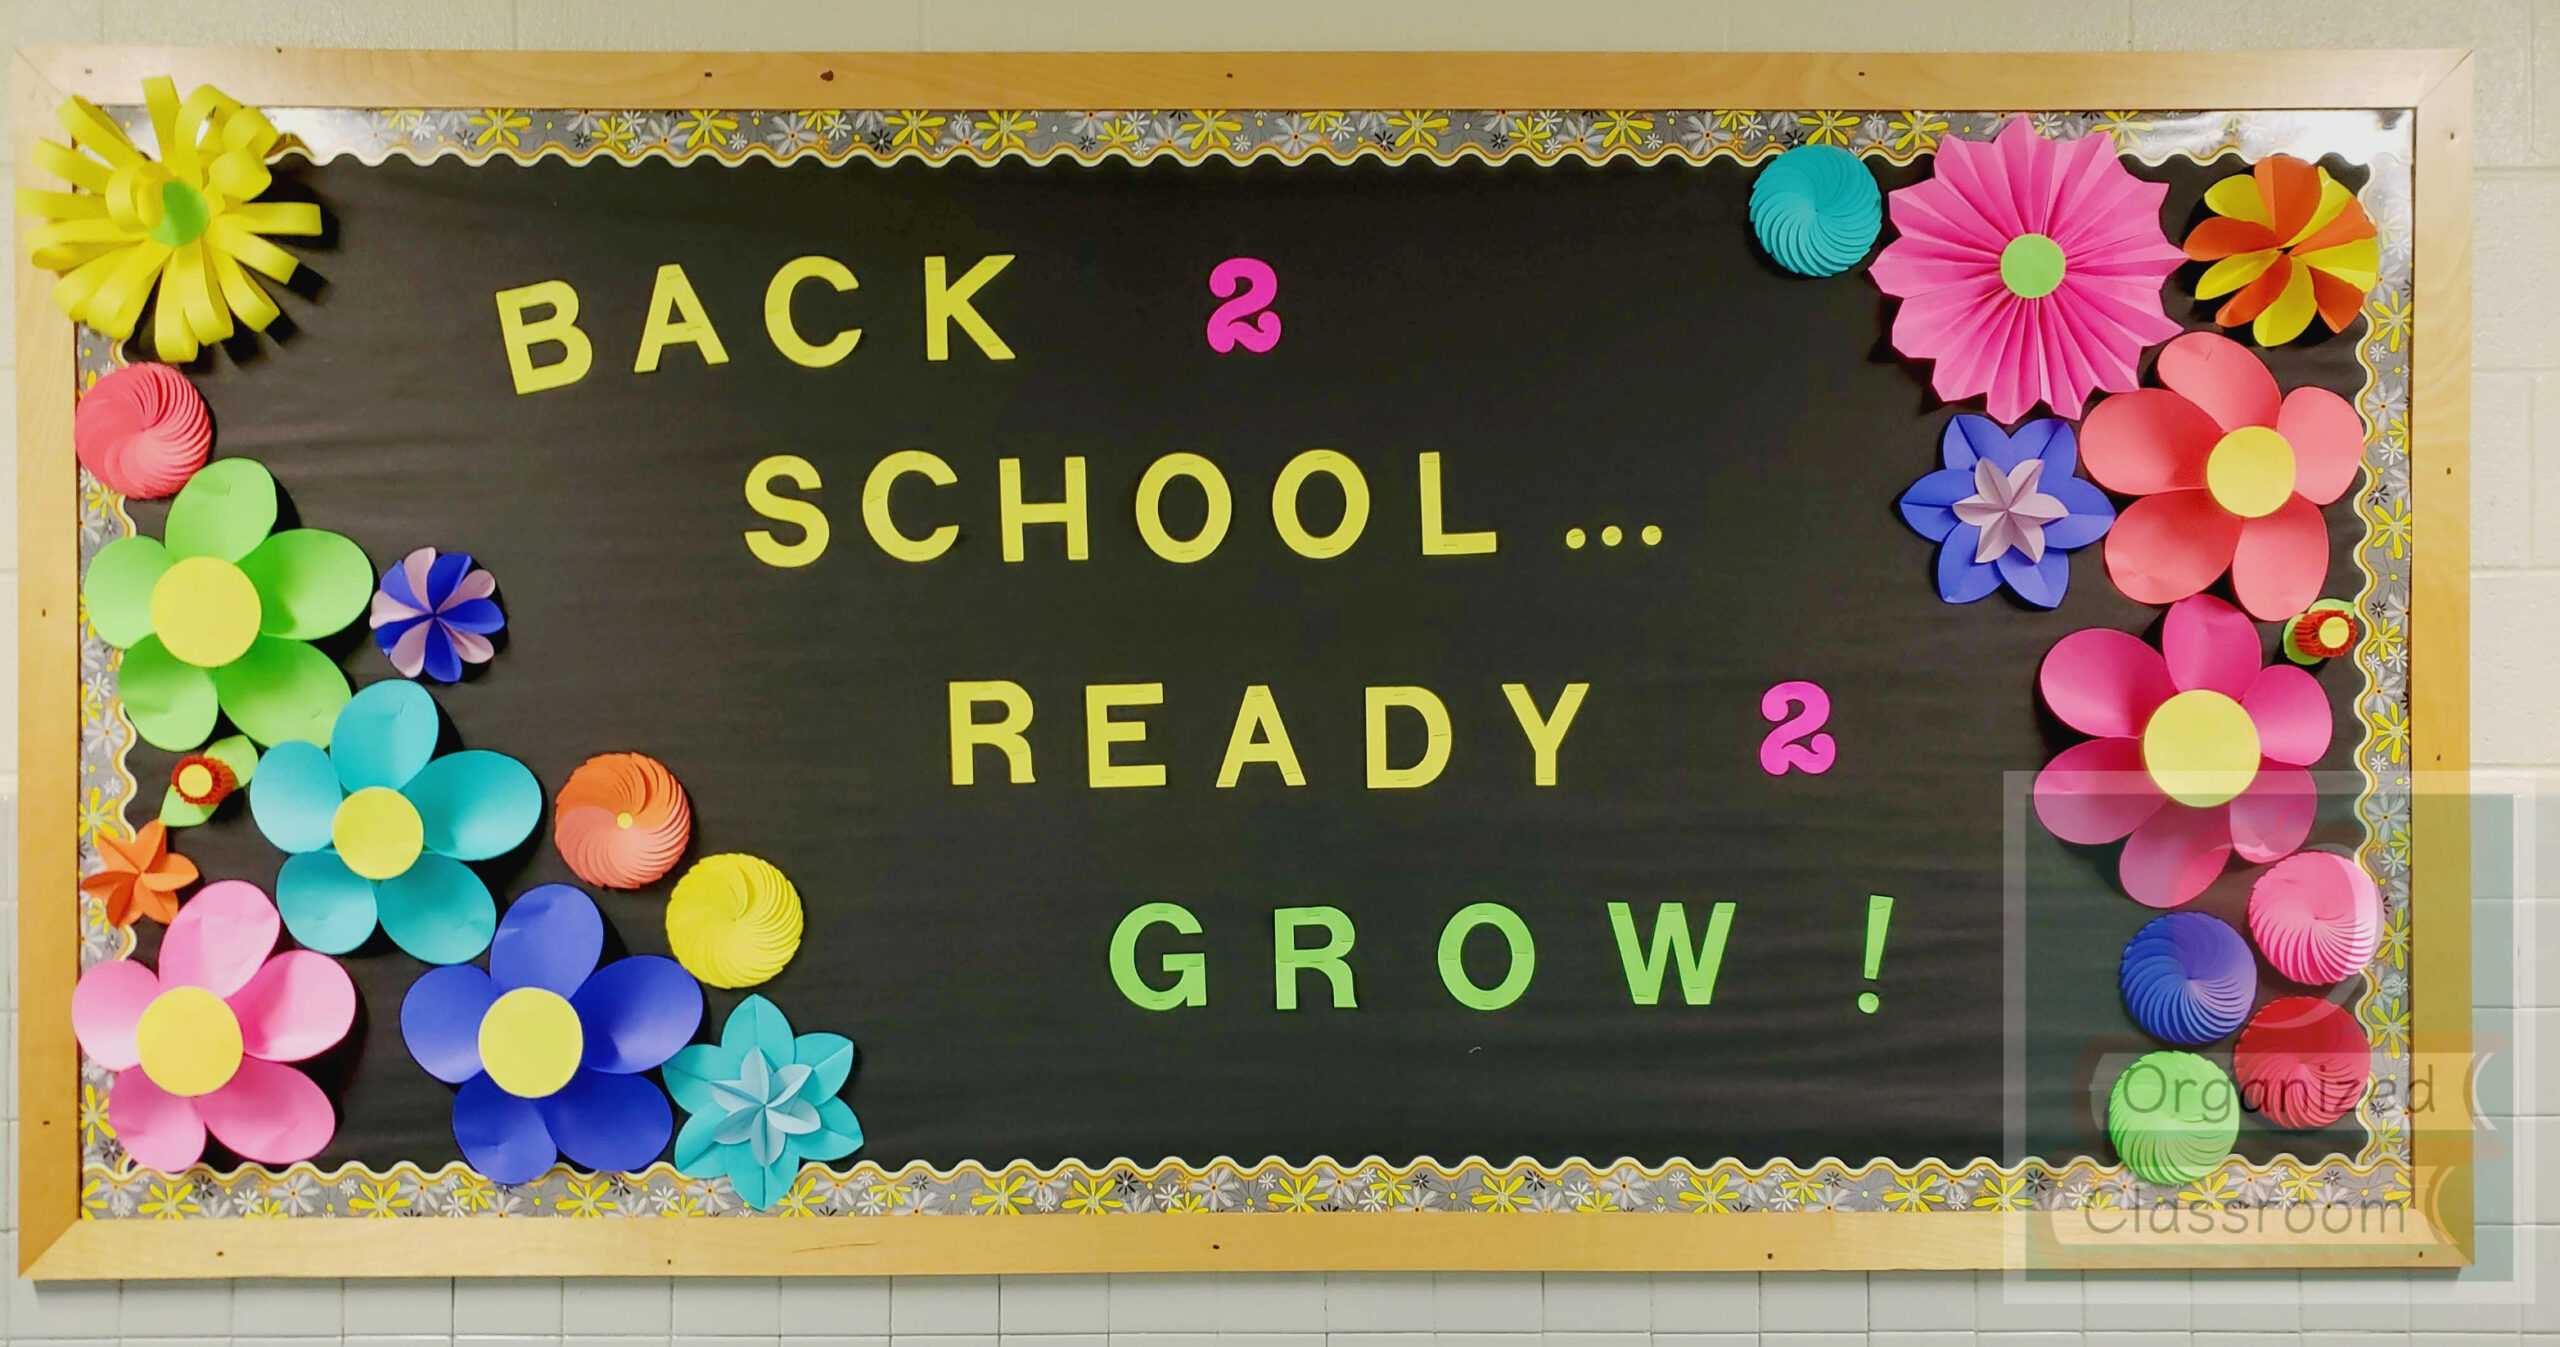 Growing In The Garden Bulletin Board | School Bulletin Boards Inside Bulletin Board Template Word